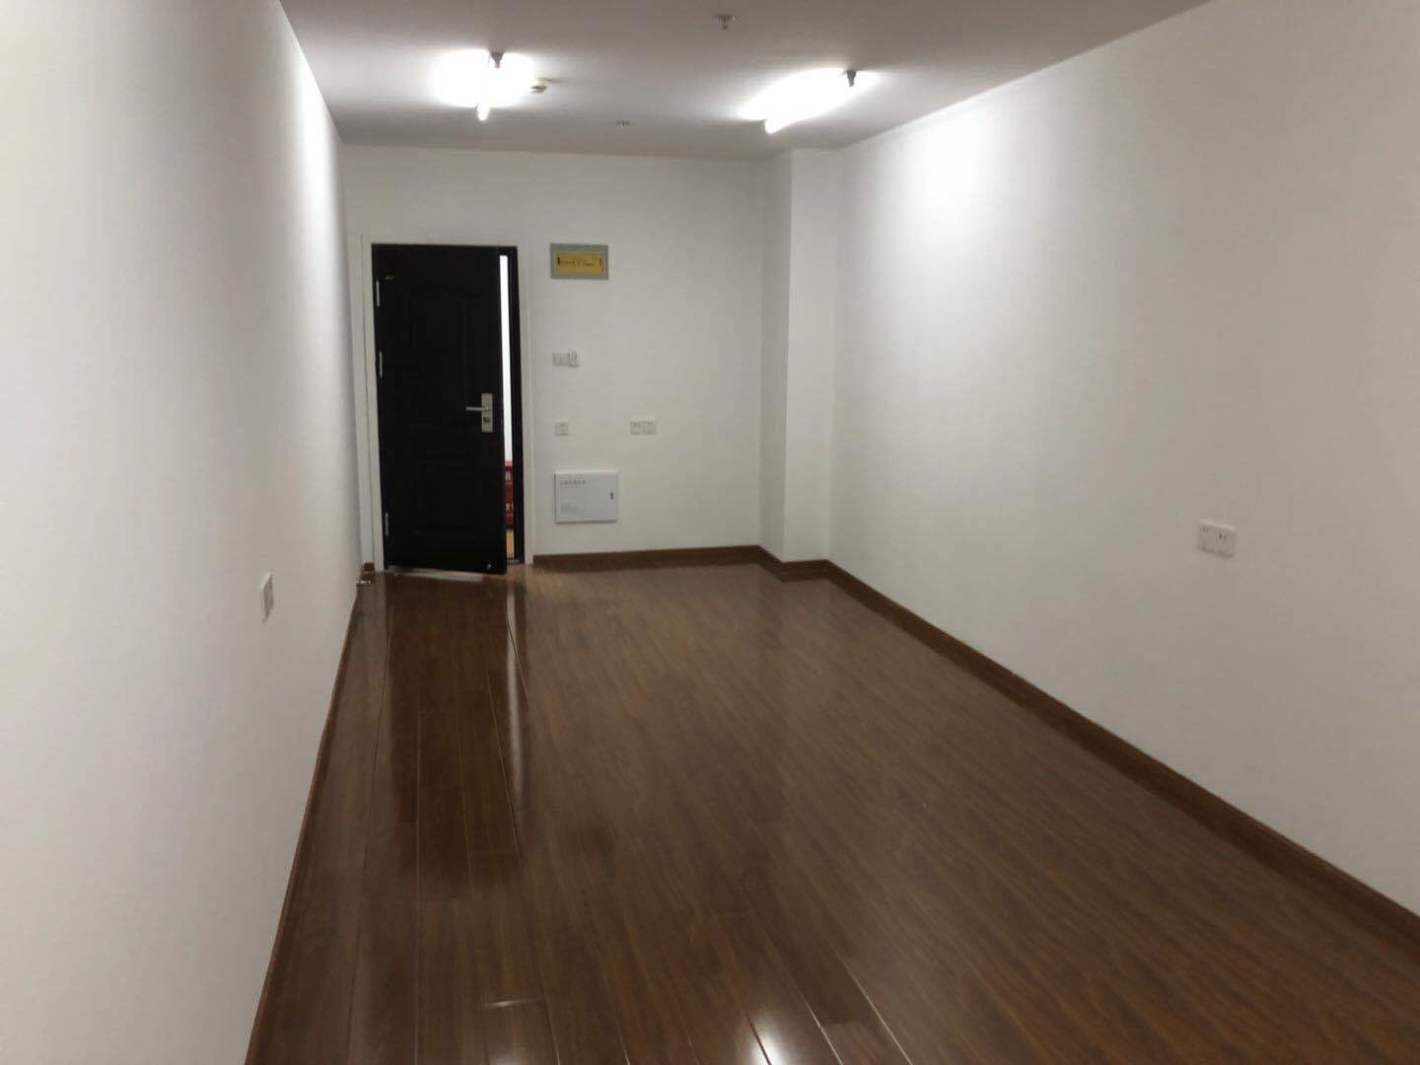 上海时装商厦40平米办公室出租-租金价格3.85元/m²/天